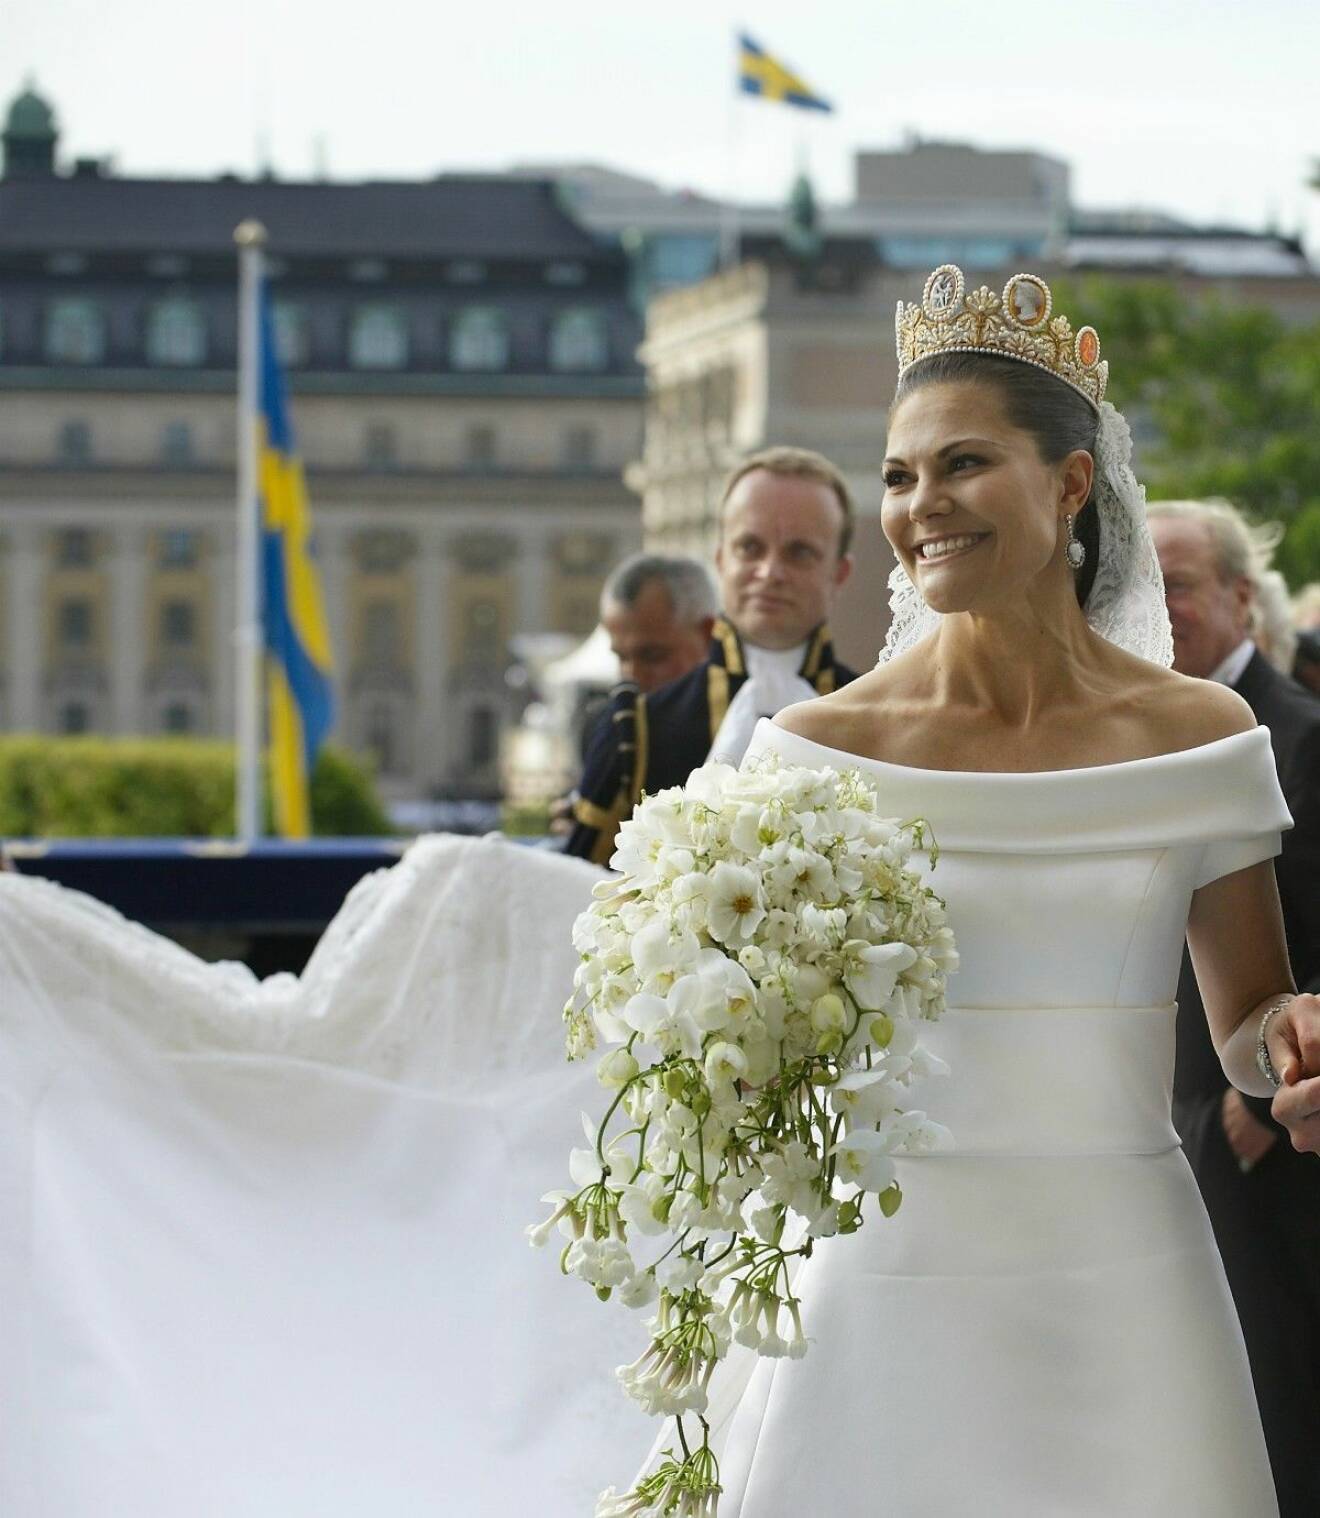 Kungliga slottet lördagen den 19 juni 2010. Hyllningsceremoni på Lejonbacken för Kronprinsessan Victoria och prins Daniel. Brudparet lämnar Lejonbacken.